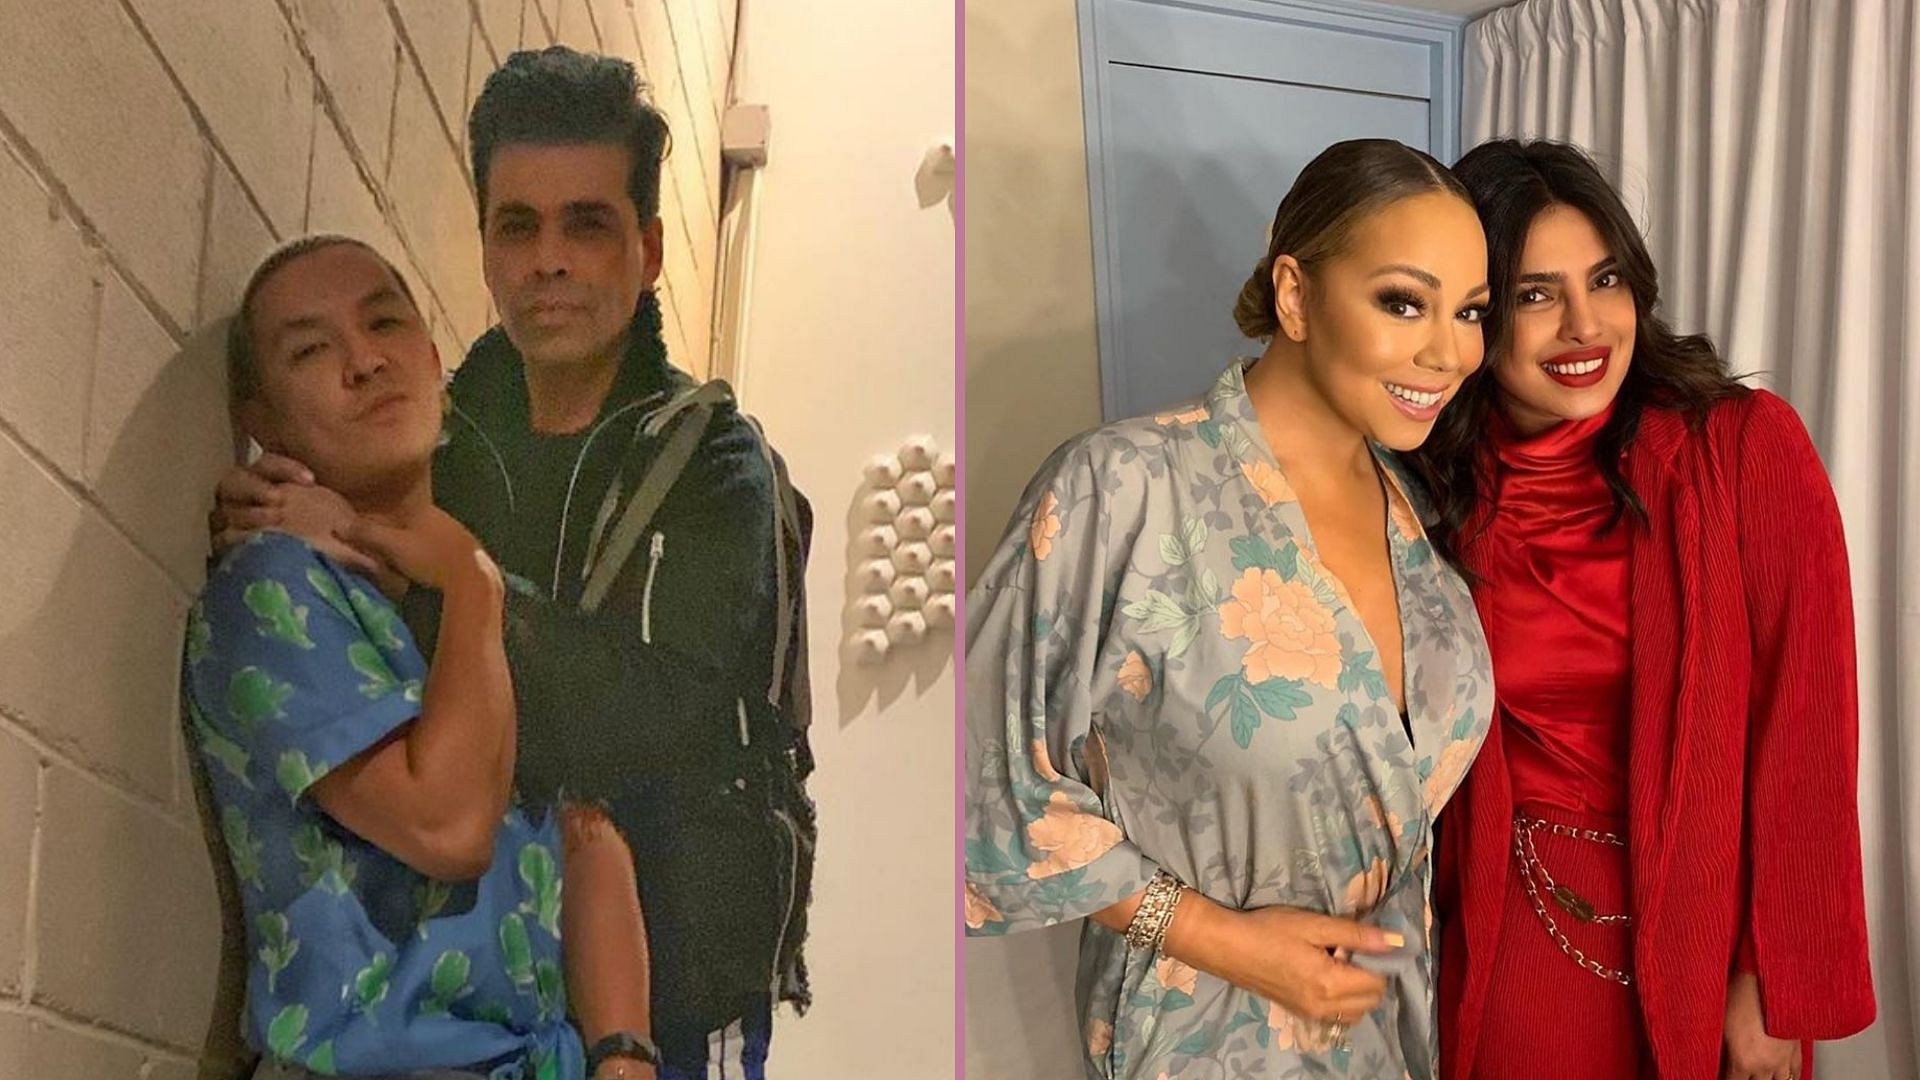 Karan Johar and Prabal Gurung partied in New York; Priyanka Chopra met her music idol Mariah Carey in London.